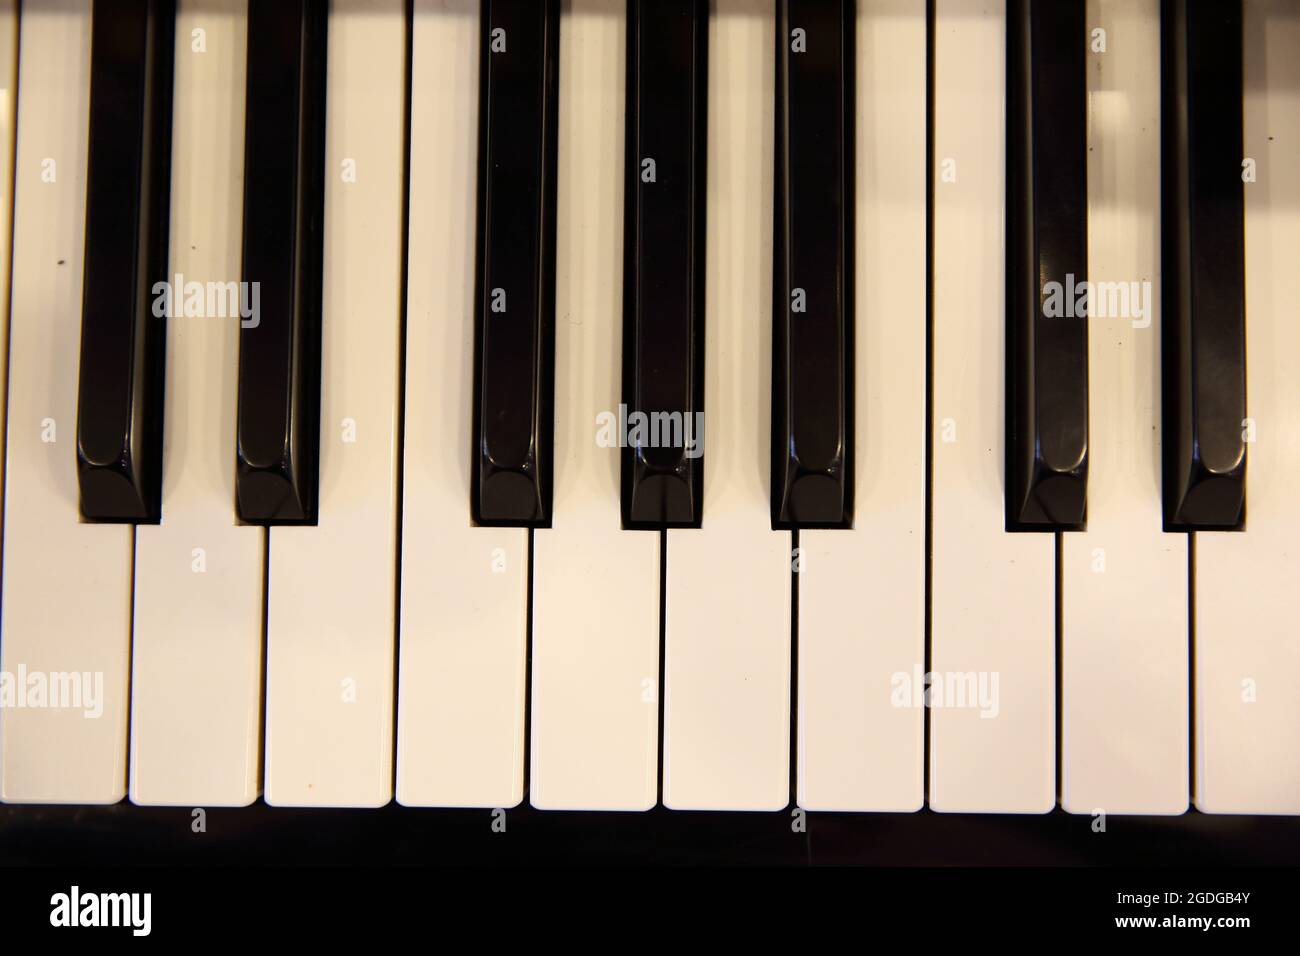 piano keyboard Stock Photo - Alamy